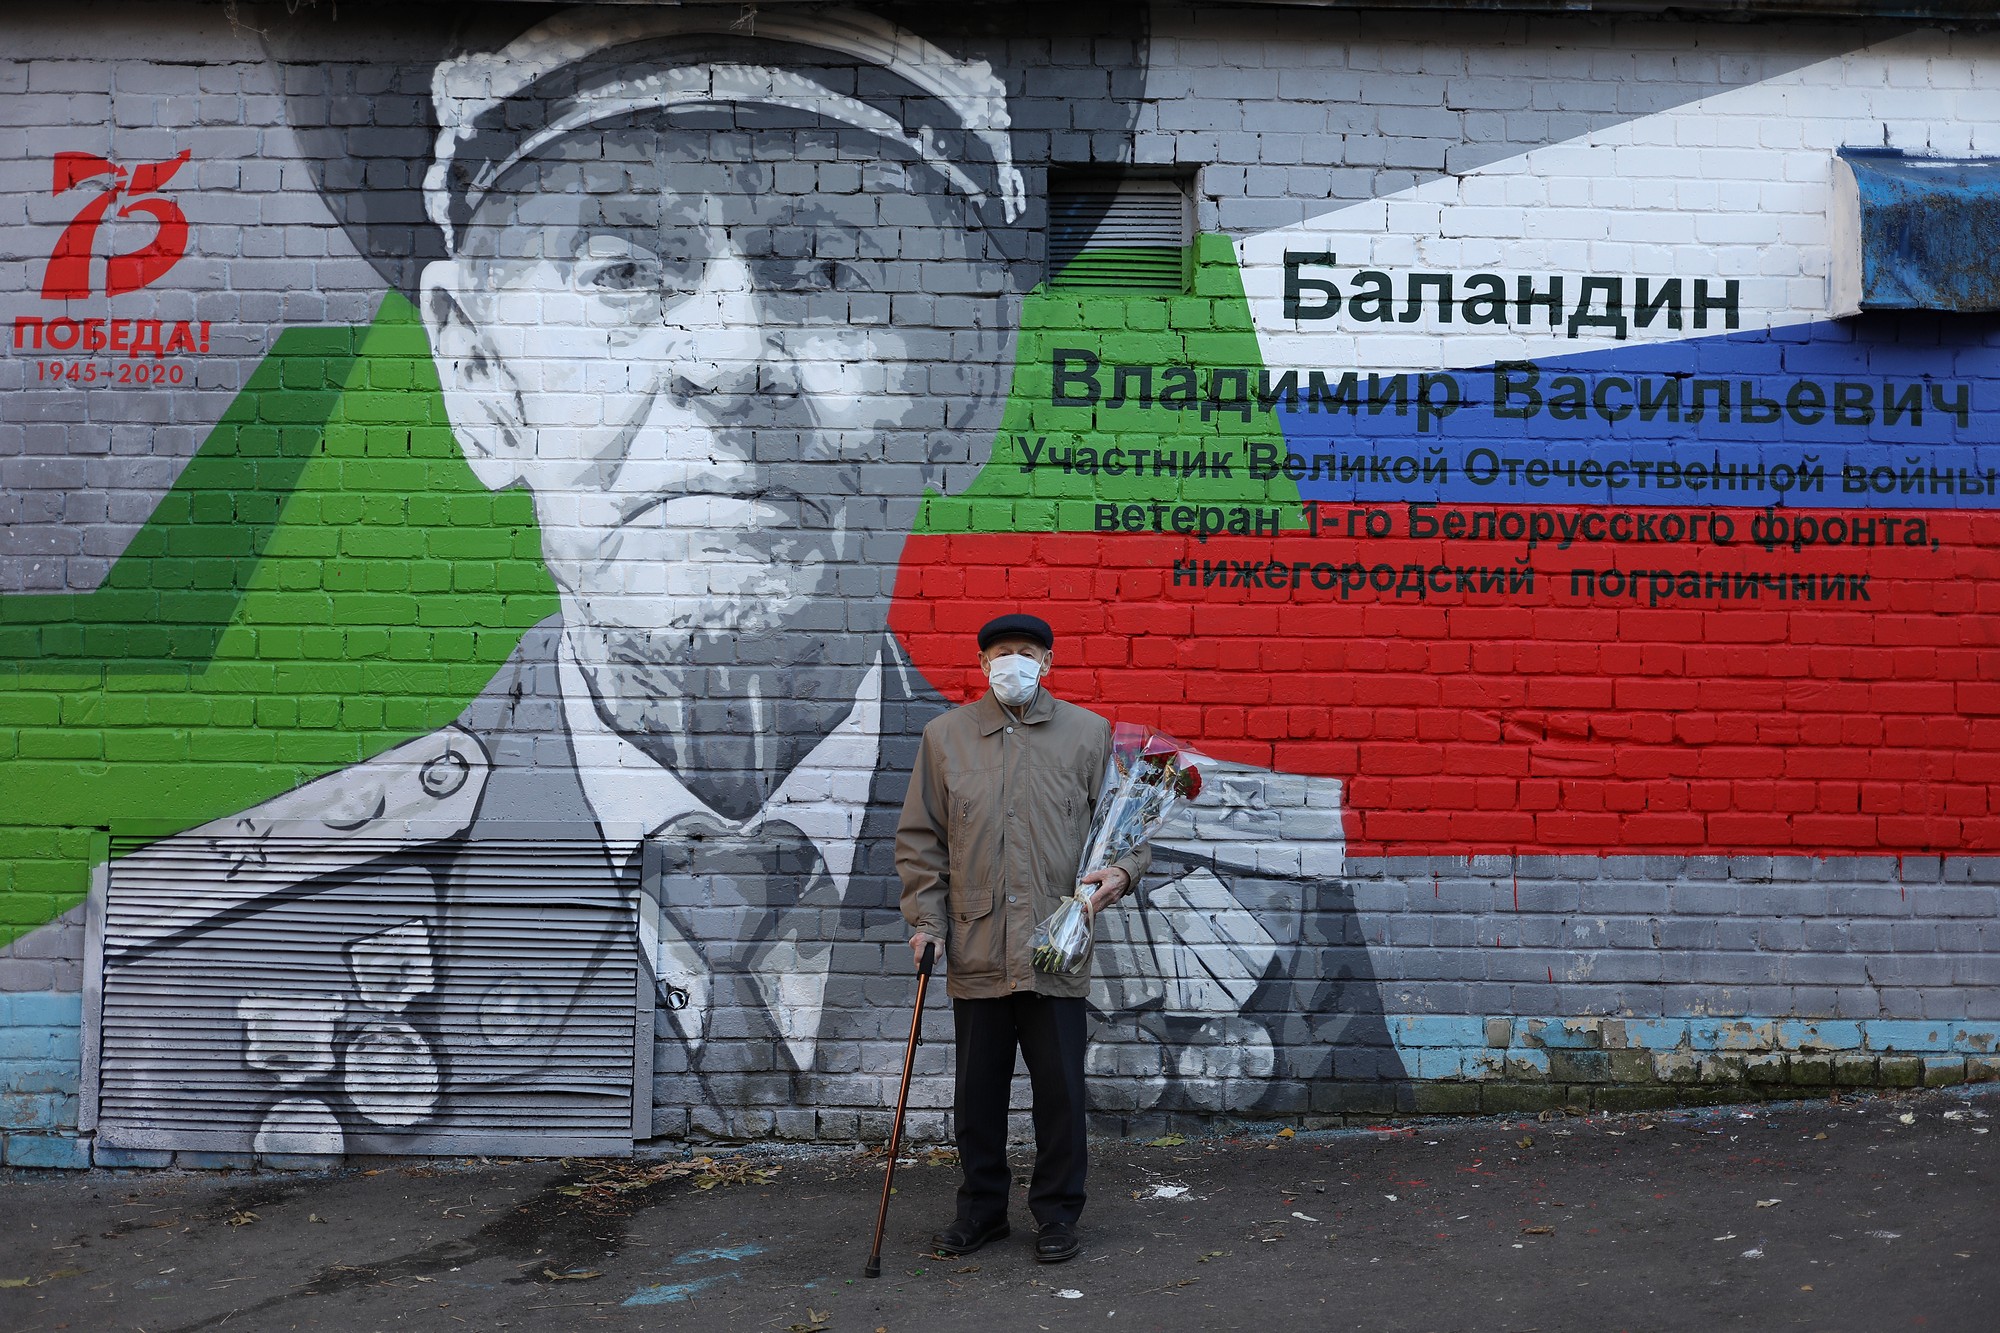 Граффити с портретом ветерана появилось на улице Ильинской в Нижнем Новгороде - фото 1